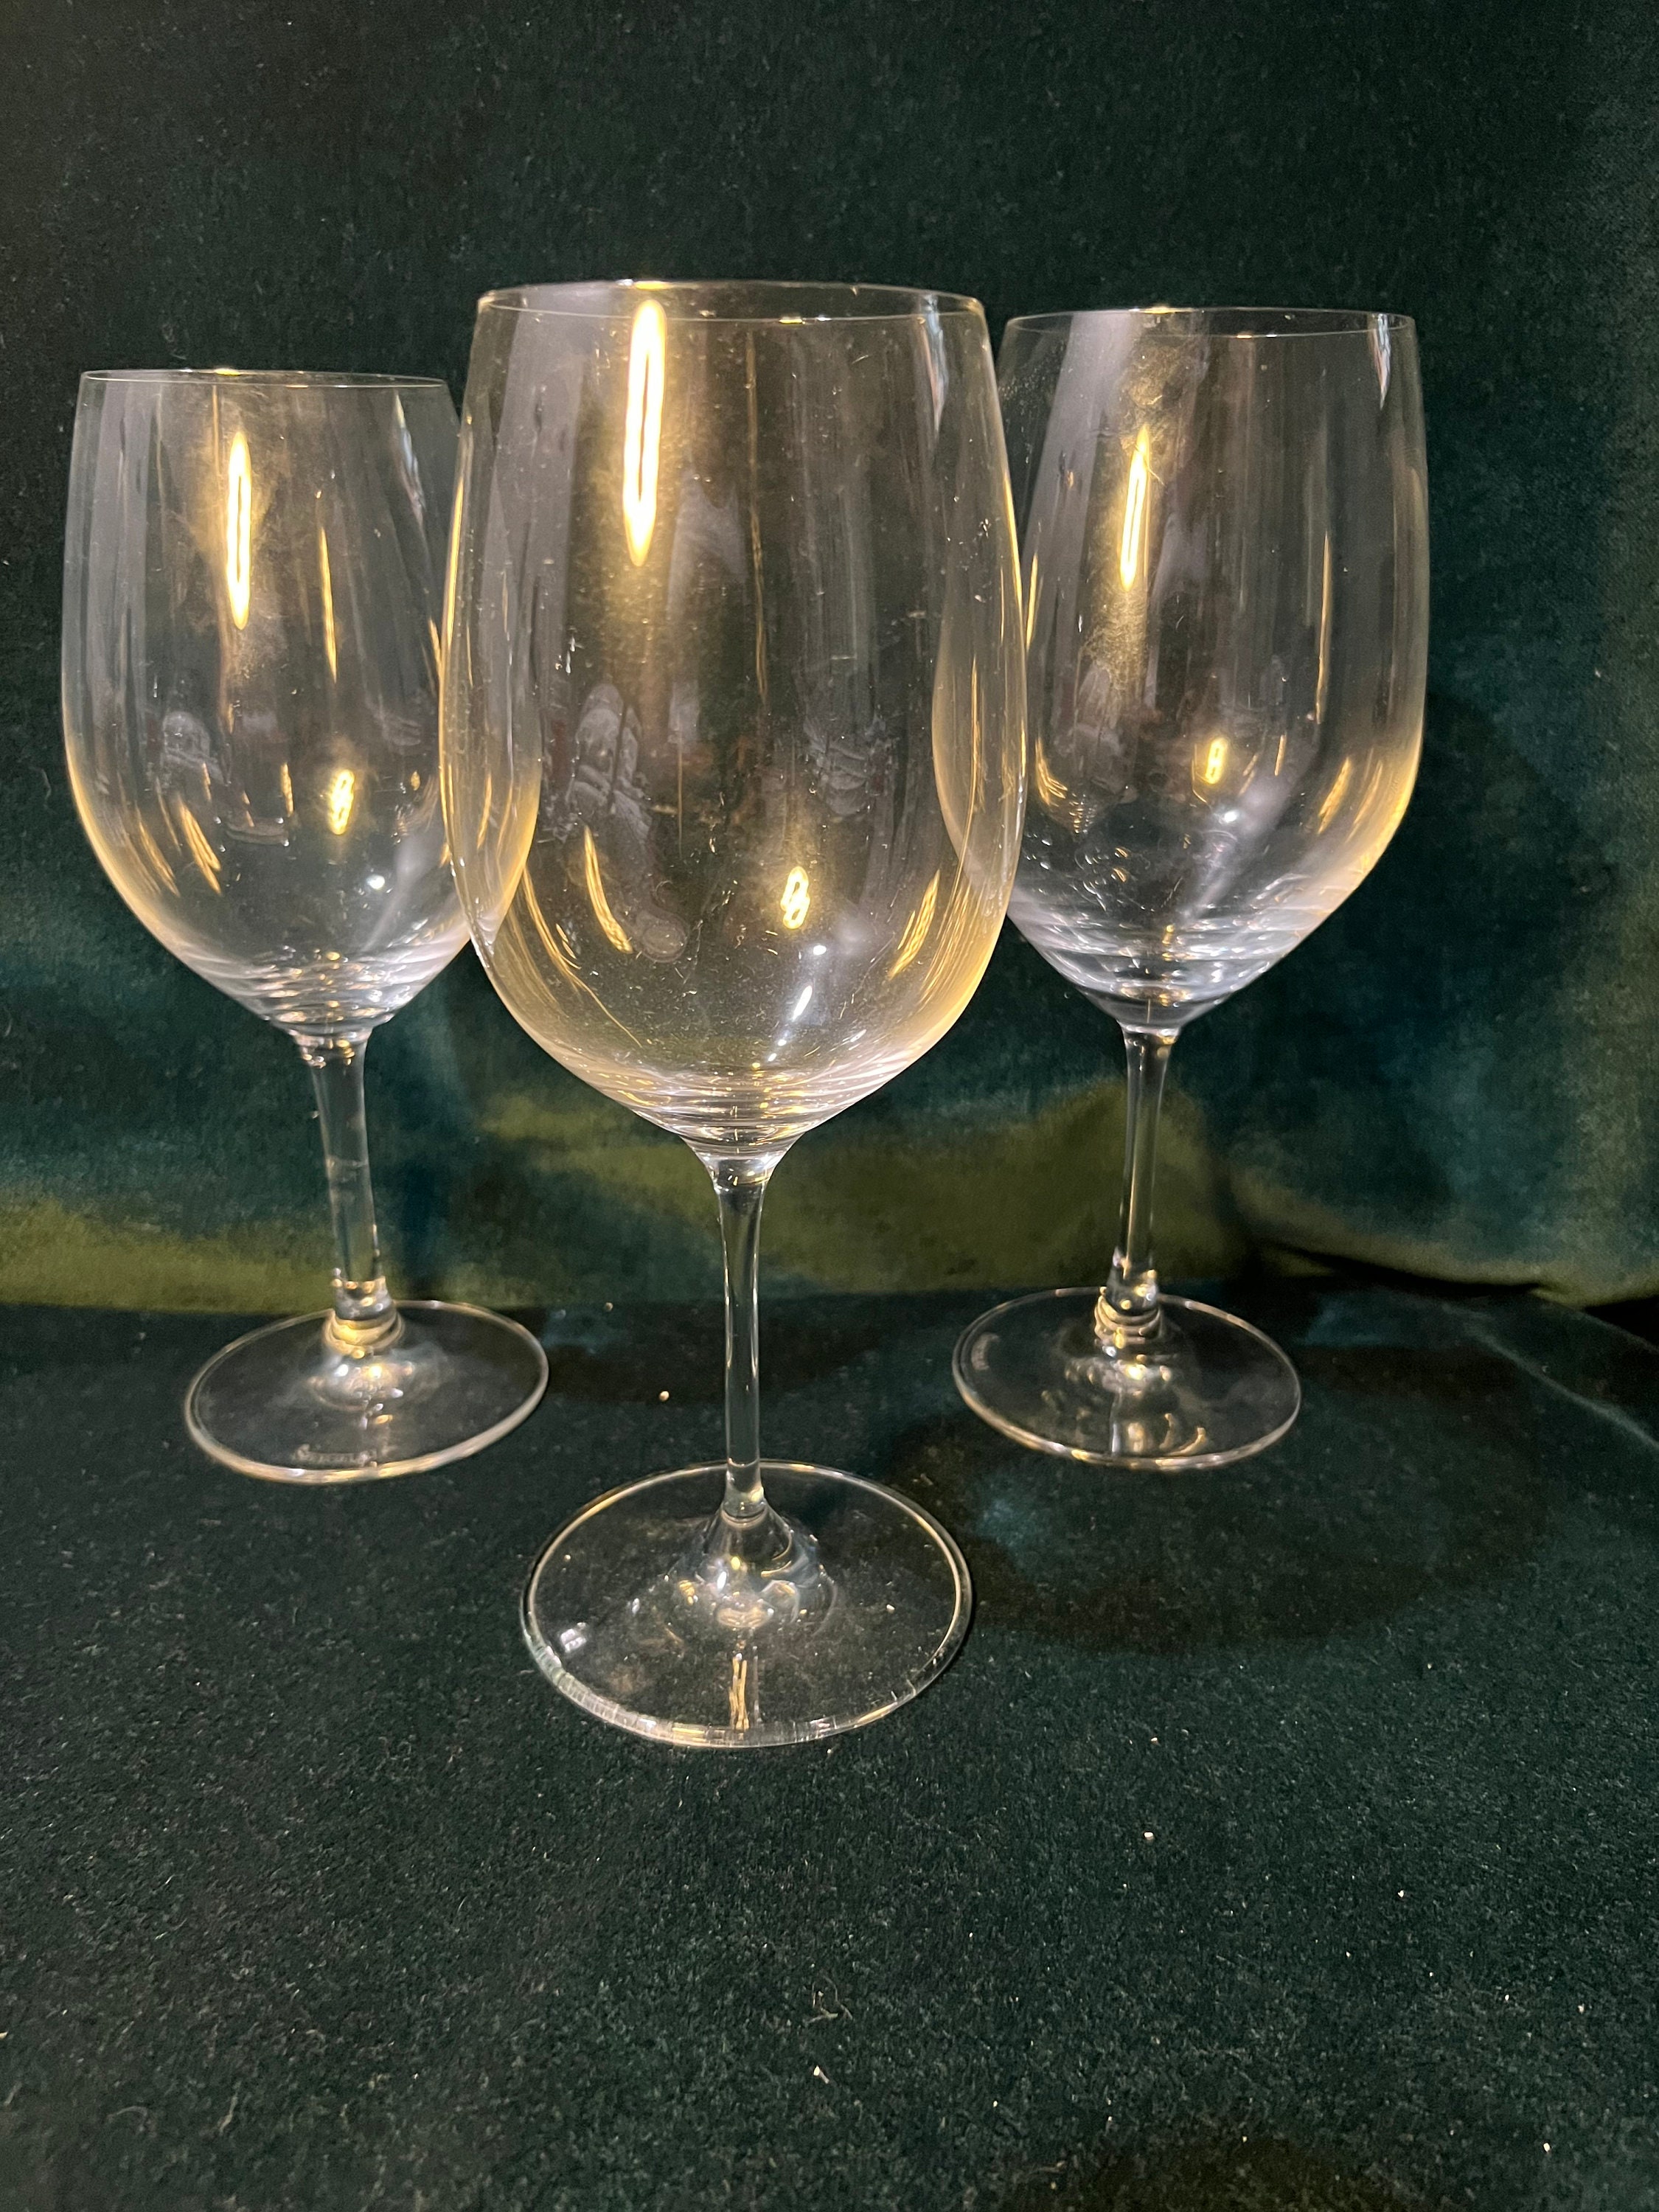 Spiegelau 4 - Piece 19.1oz. Lead Free Crystal Whiskey Glass Glassware Set